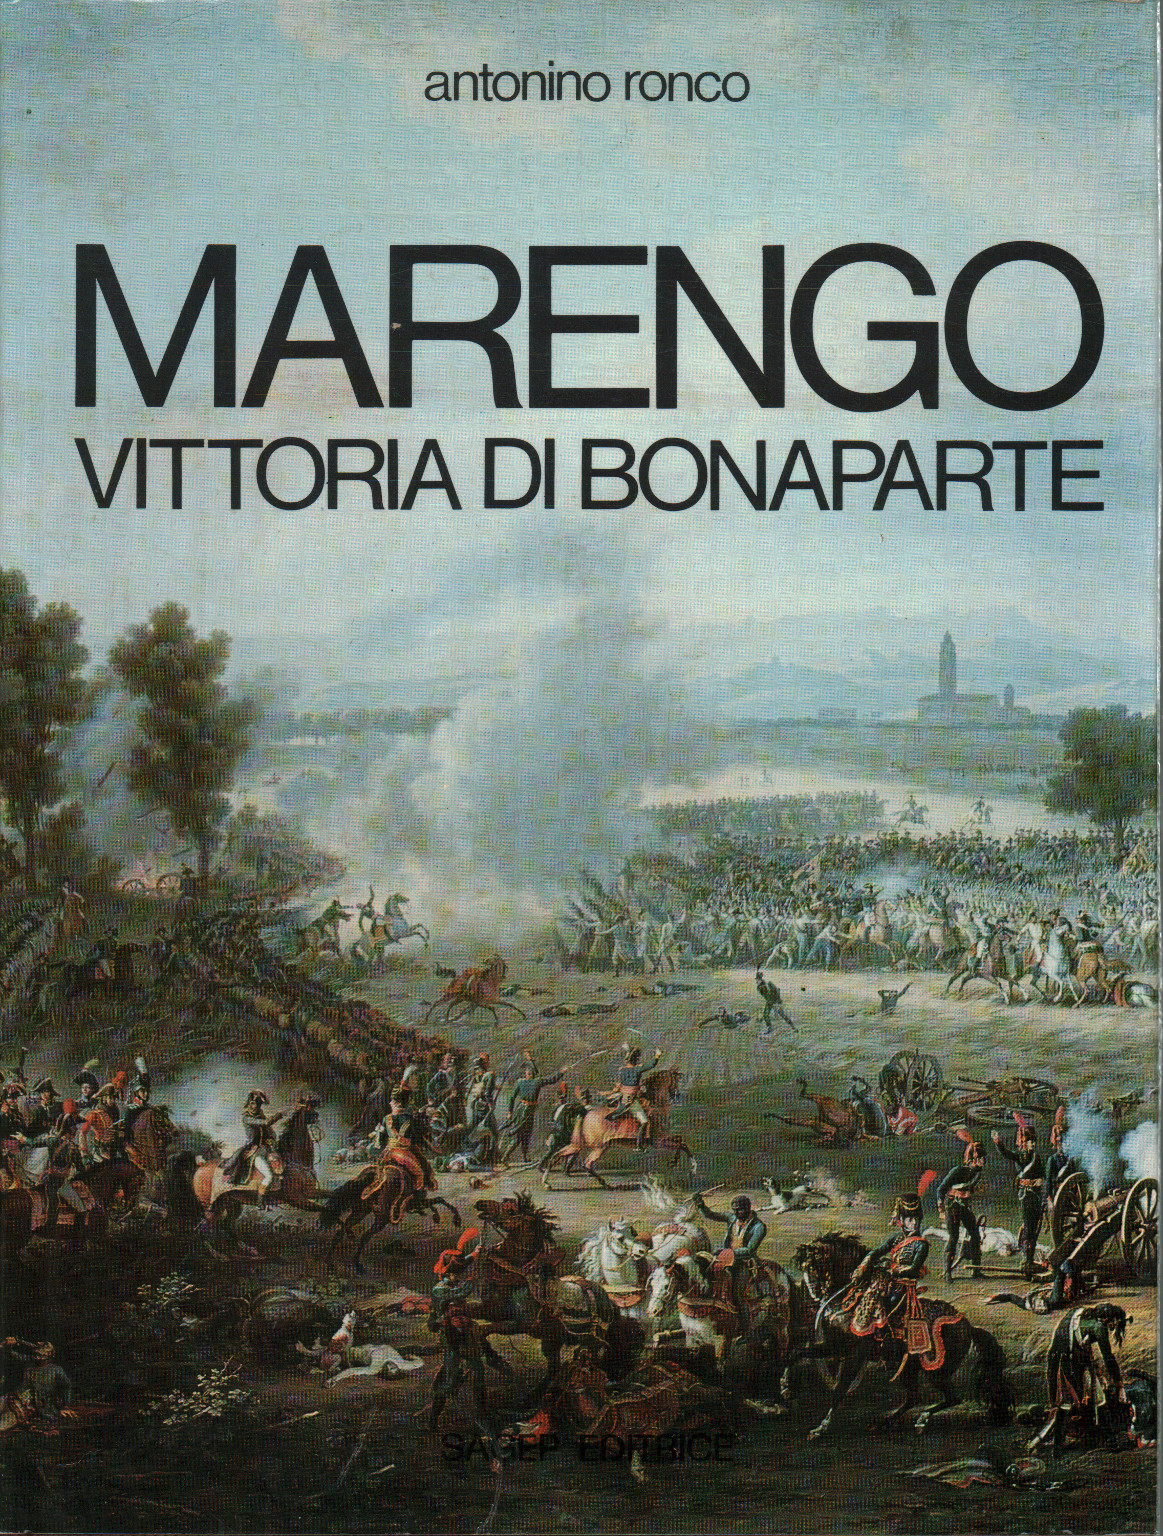 Marengo, Antonino Ronco